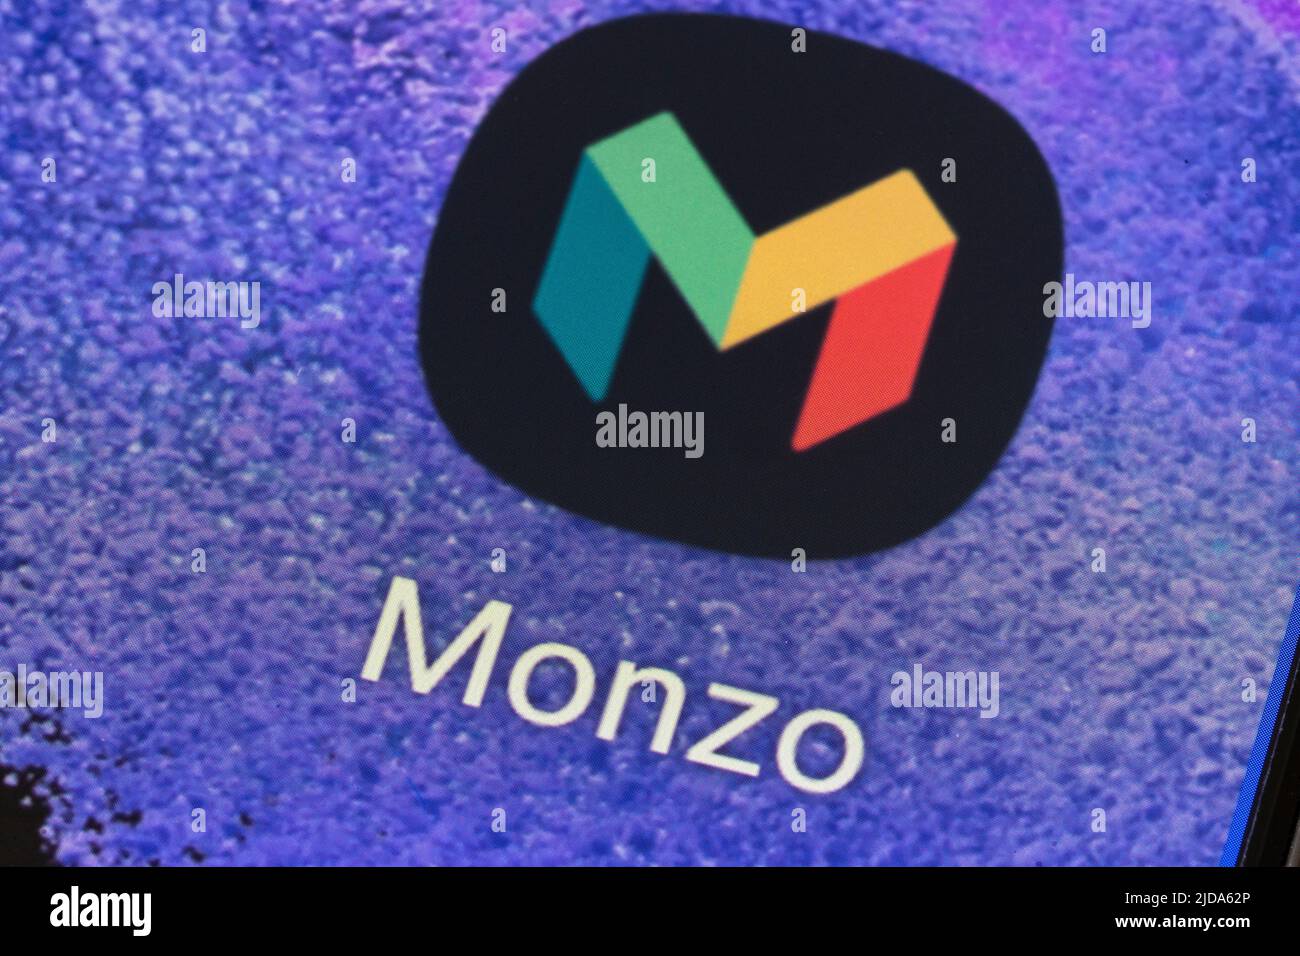 Primer plano del logotipo y el icono de la aplicación Monzo en la pantalla de un teléfono móvil. Monzo fue uno de los primeros de los únicos bancos rivales del Reino Unido basados en aplicaciones online Foto de stock